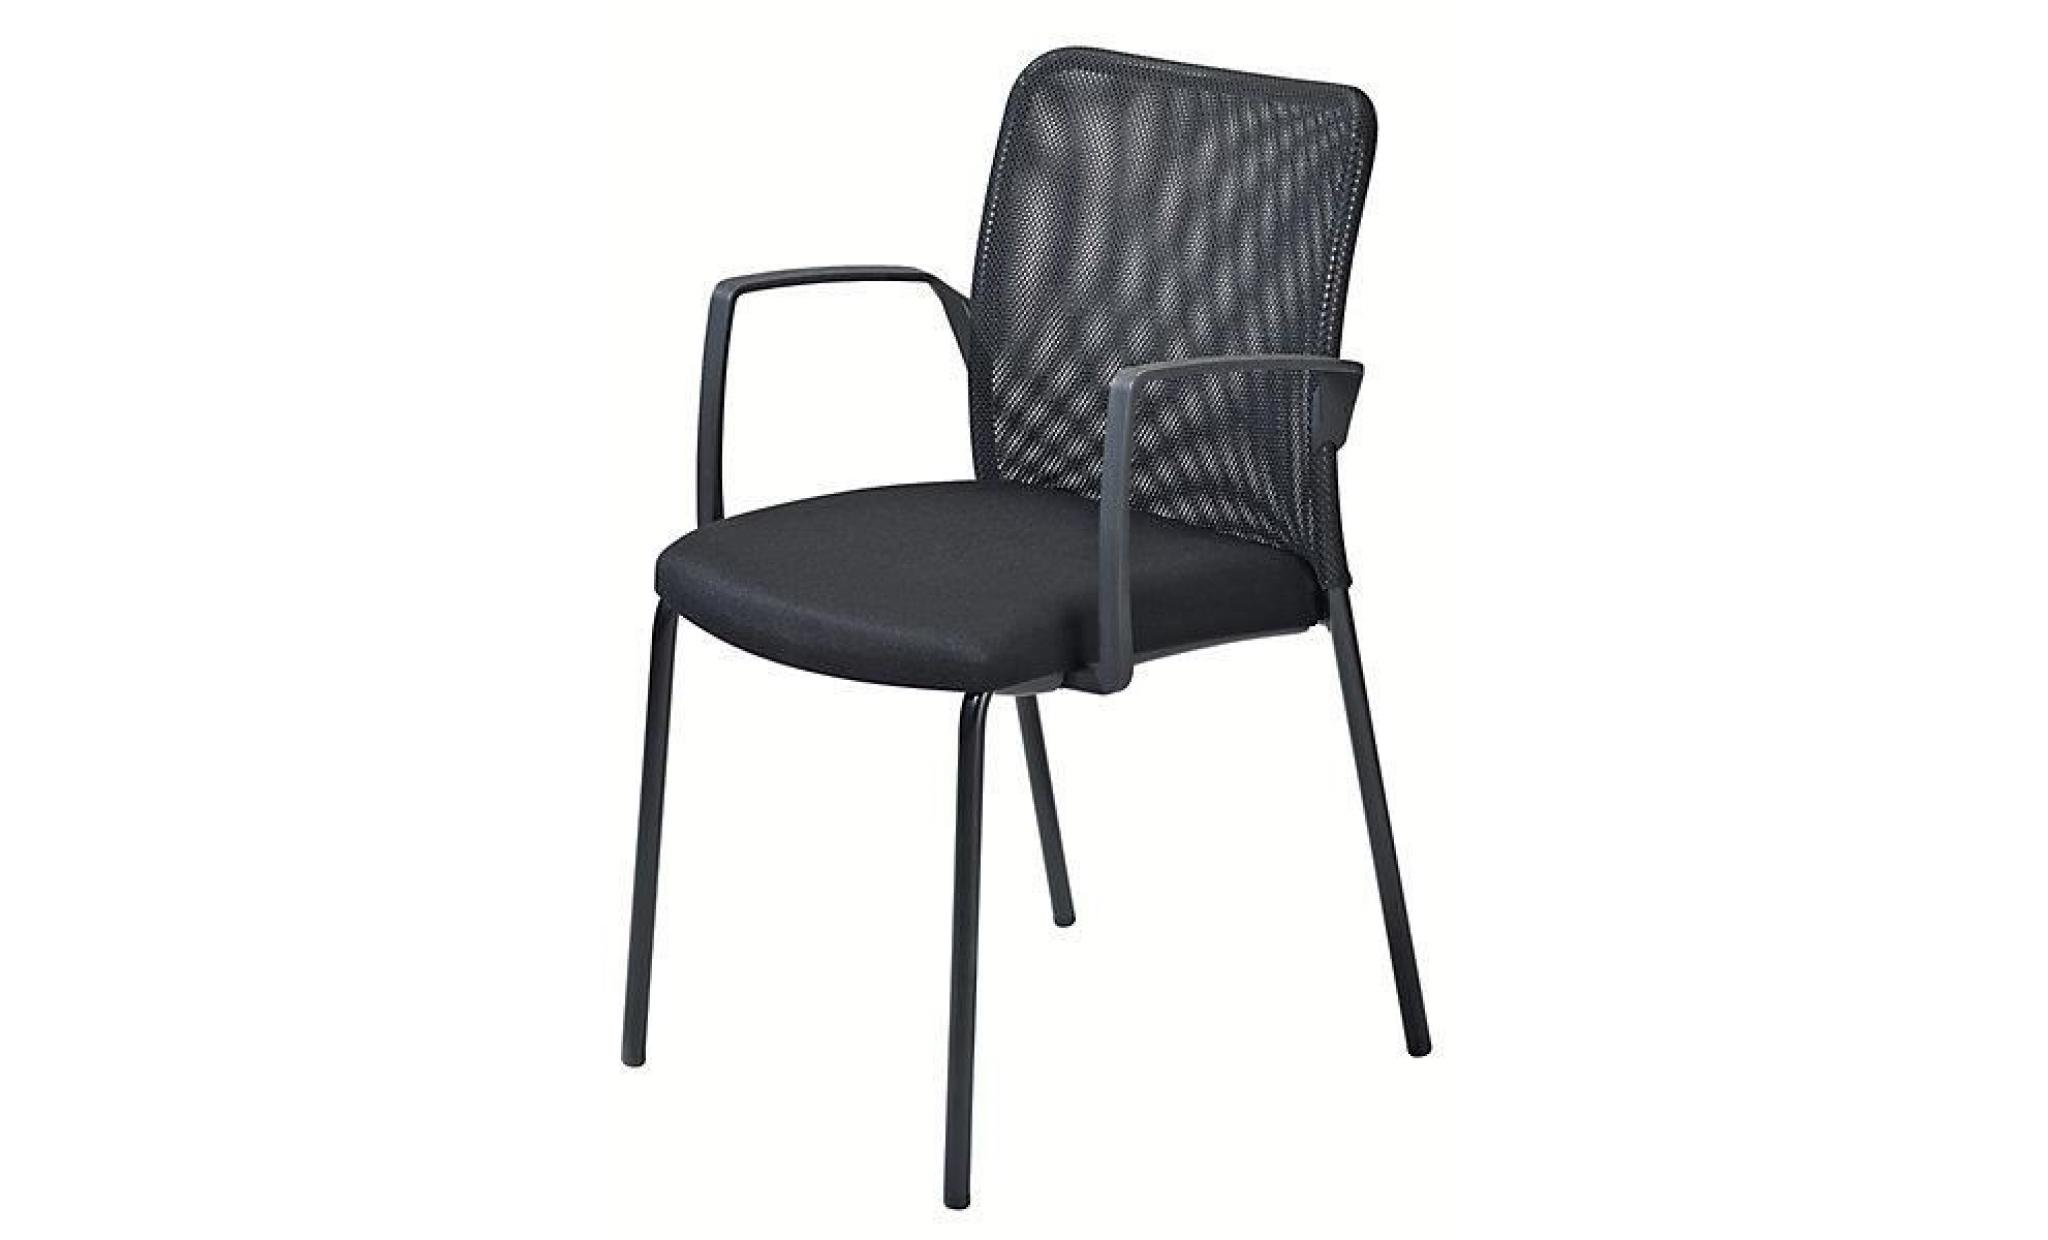 dauphin siège visiteur à dossier résille   noir, lot de 4   avec accoudoirs   chaise chaise de réunion chaise rembourrée chaises pas cher